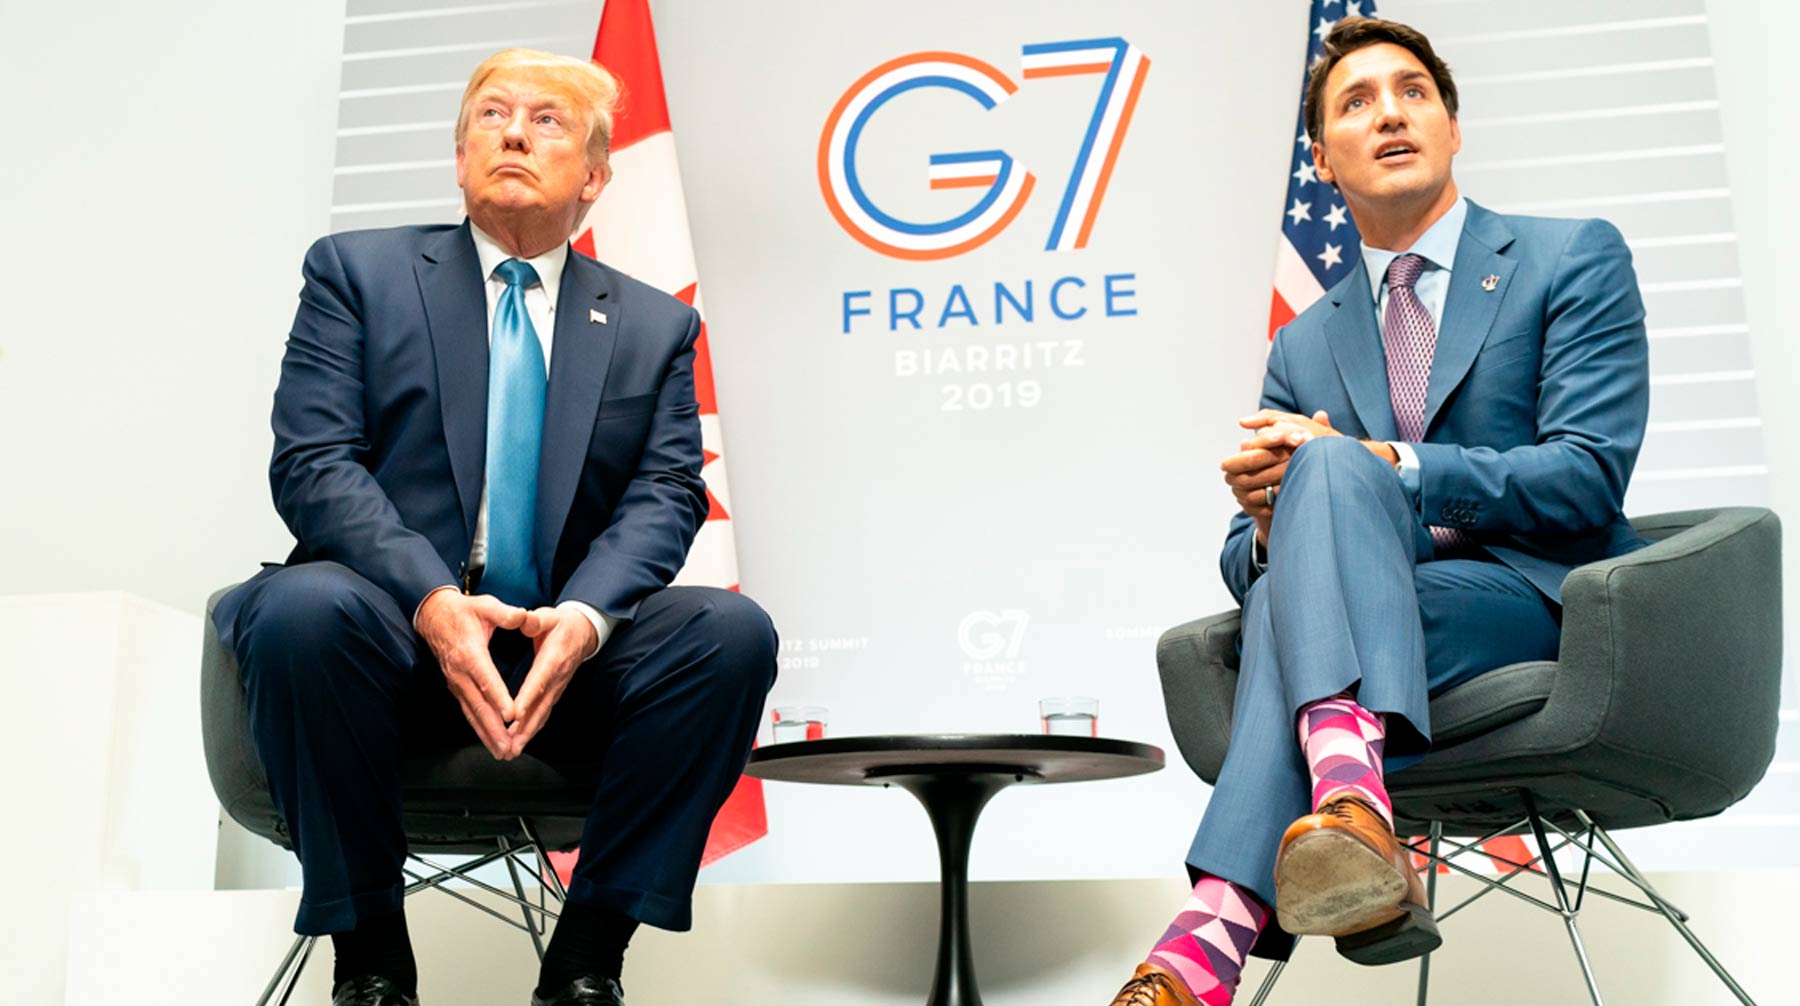 Россия остается «разрушительной силой», заявил Джастин Трюдо Джастин Трюдо  и Дональд Трамп на саммите G7 во Франции